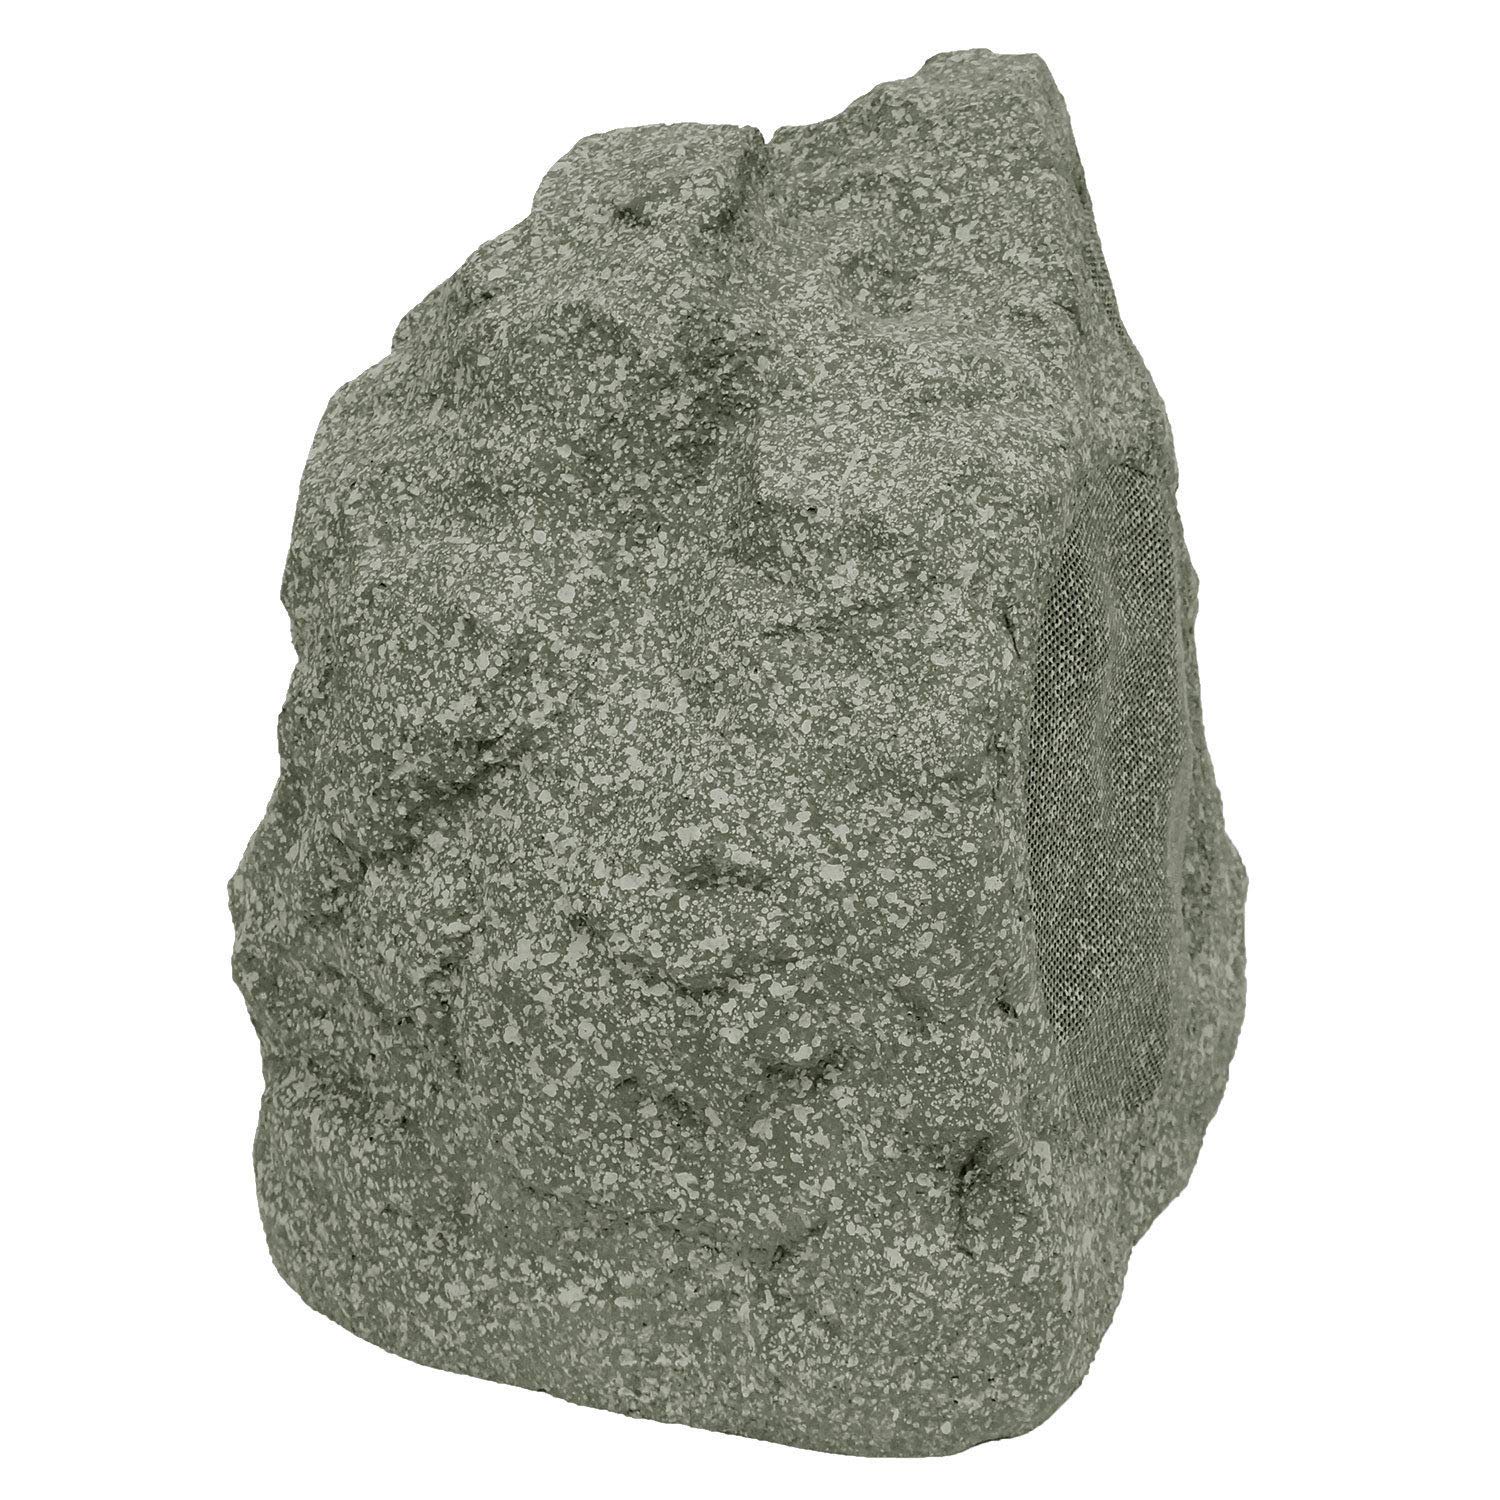 Niles RS5 Speckled Granite Pro Weatherproof Rock Loudspeaker - image 5 of 5